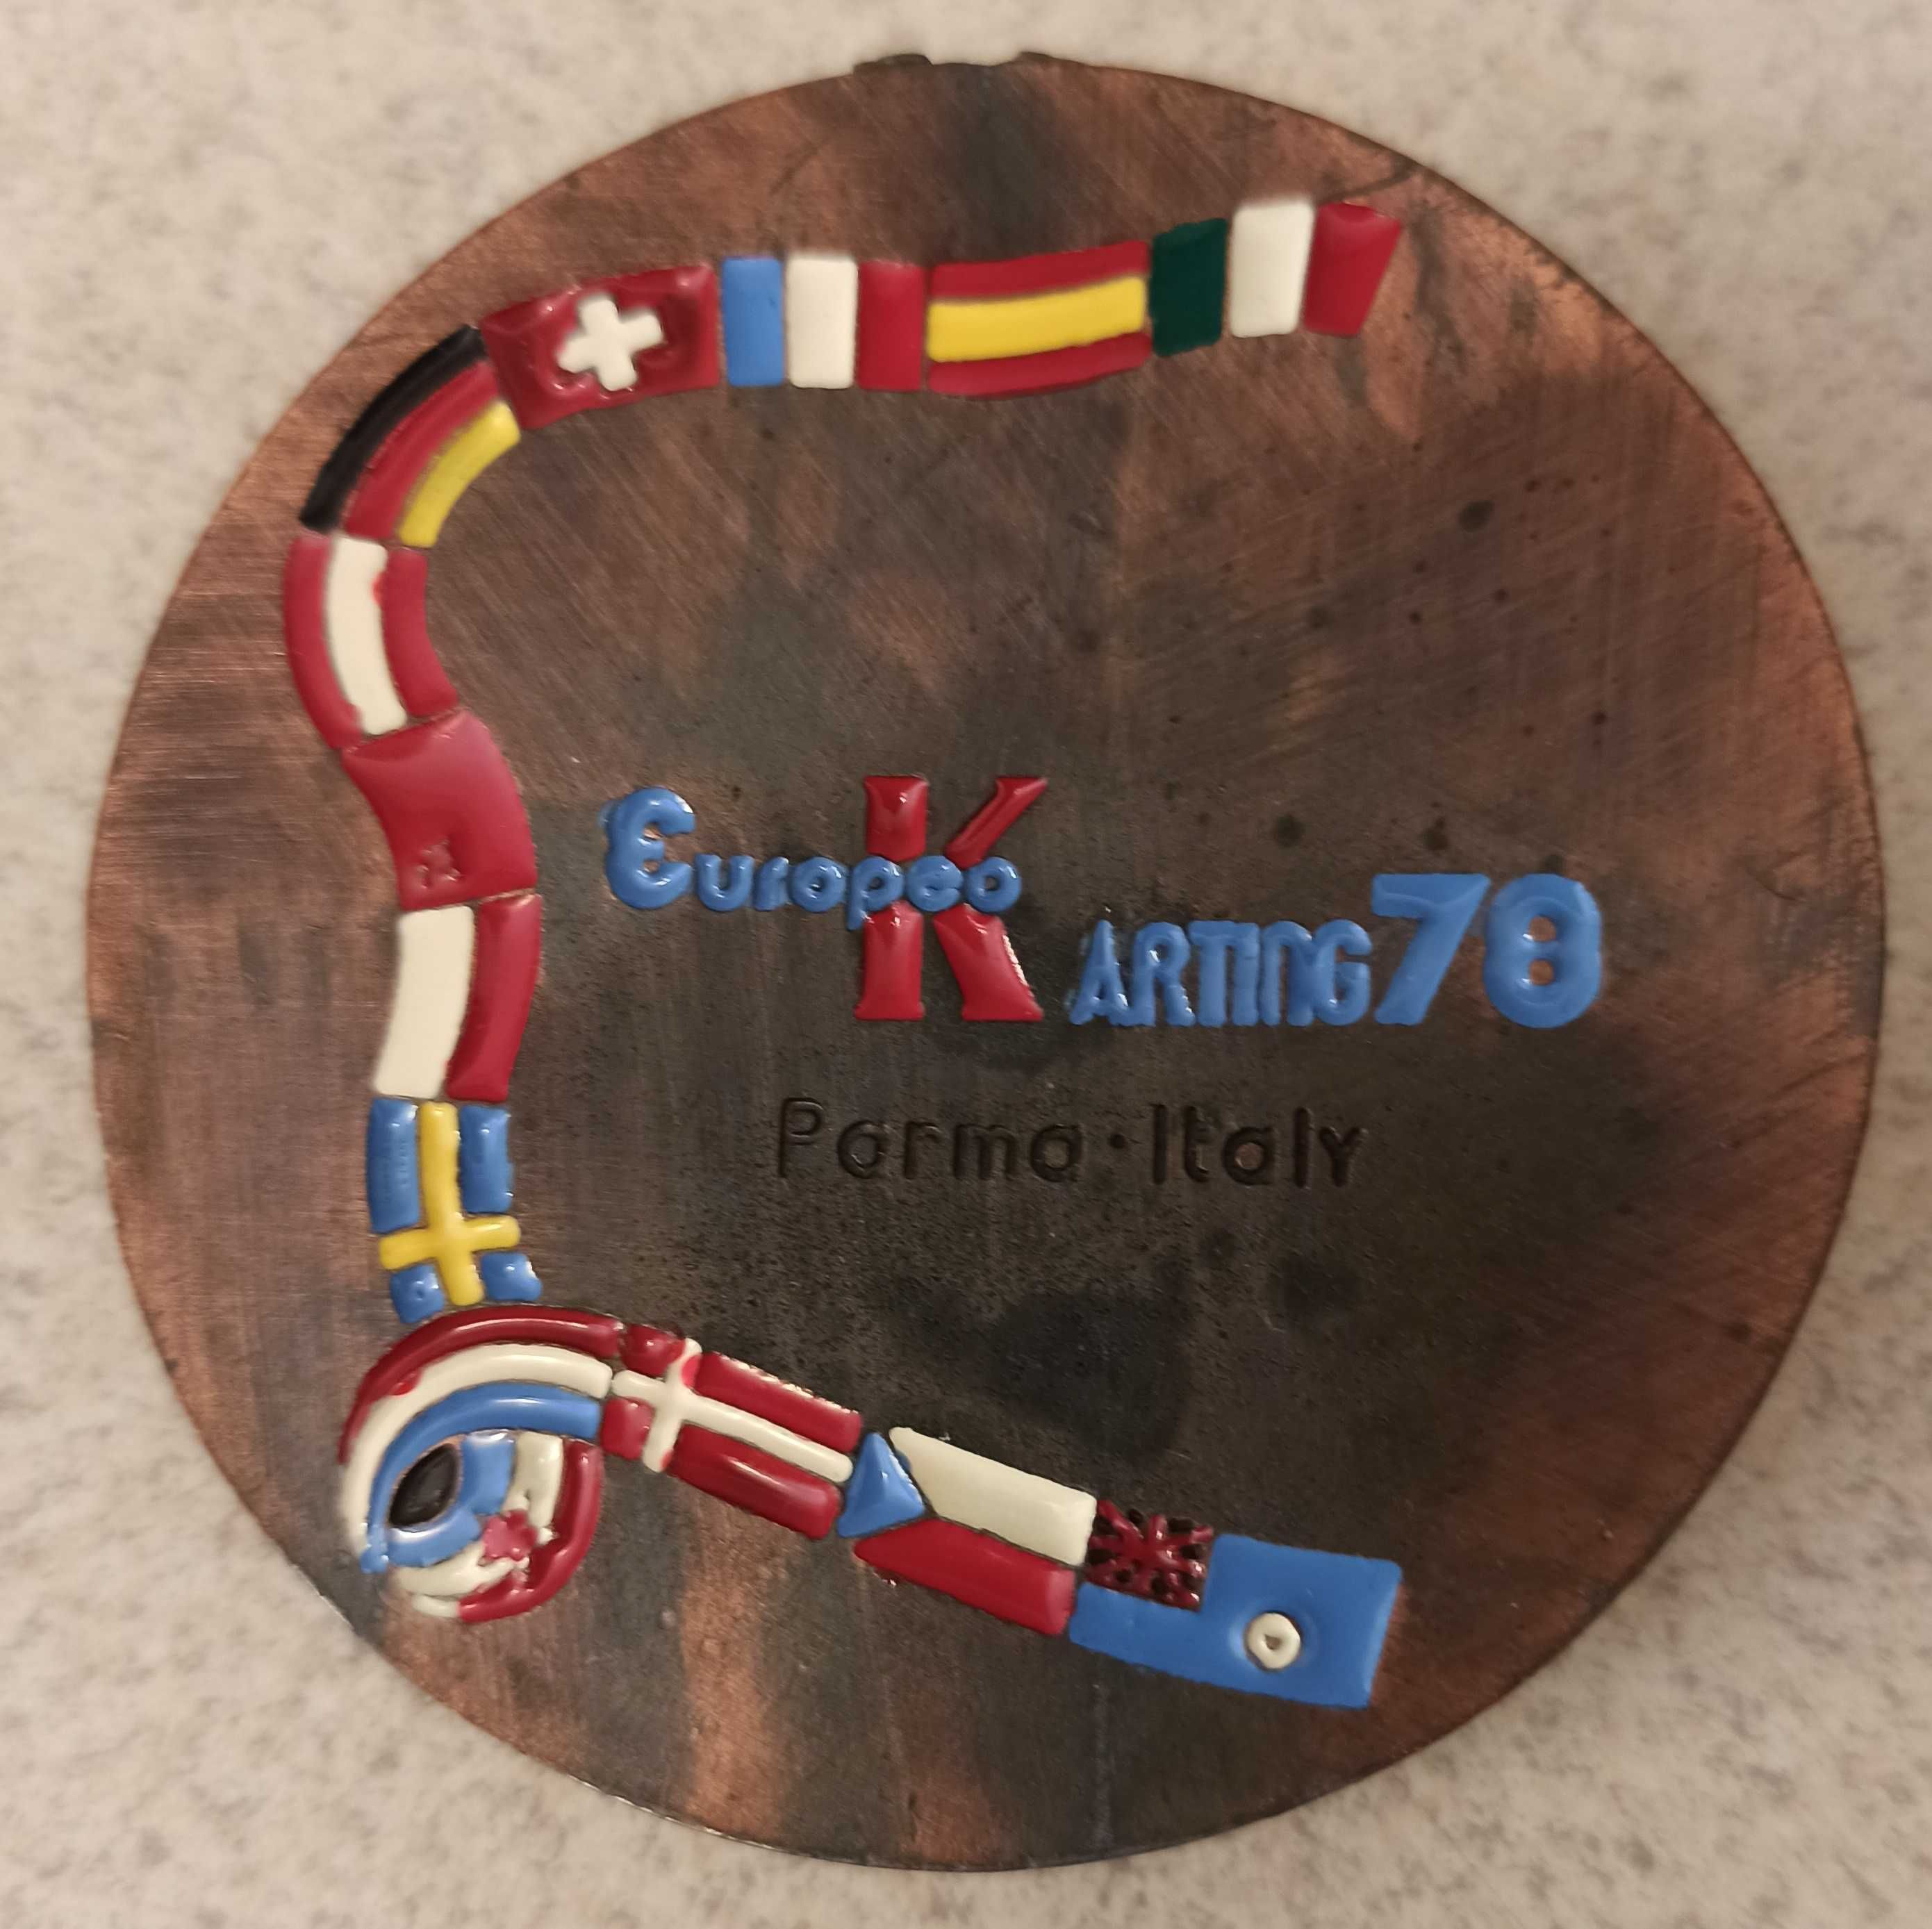 Brązowy medal Europeo Karting 78 Formuła 1 Parma!